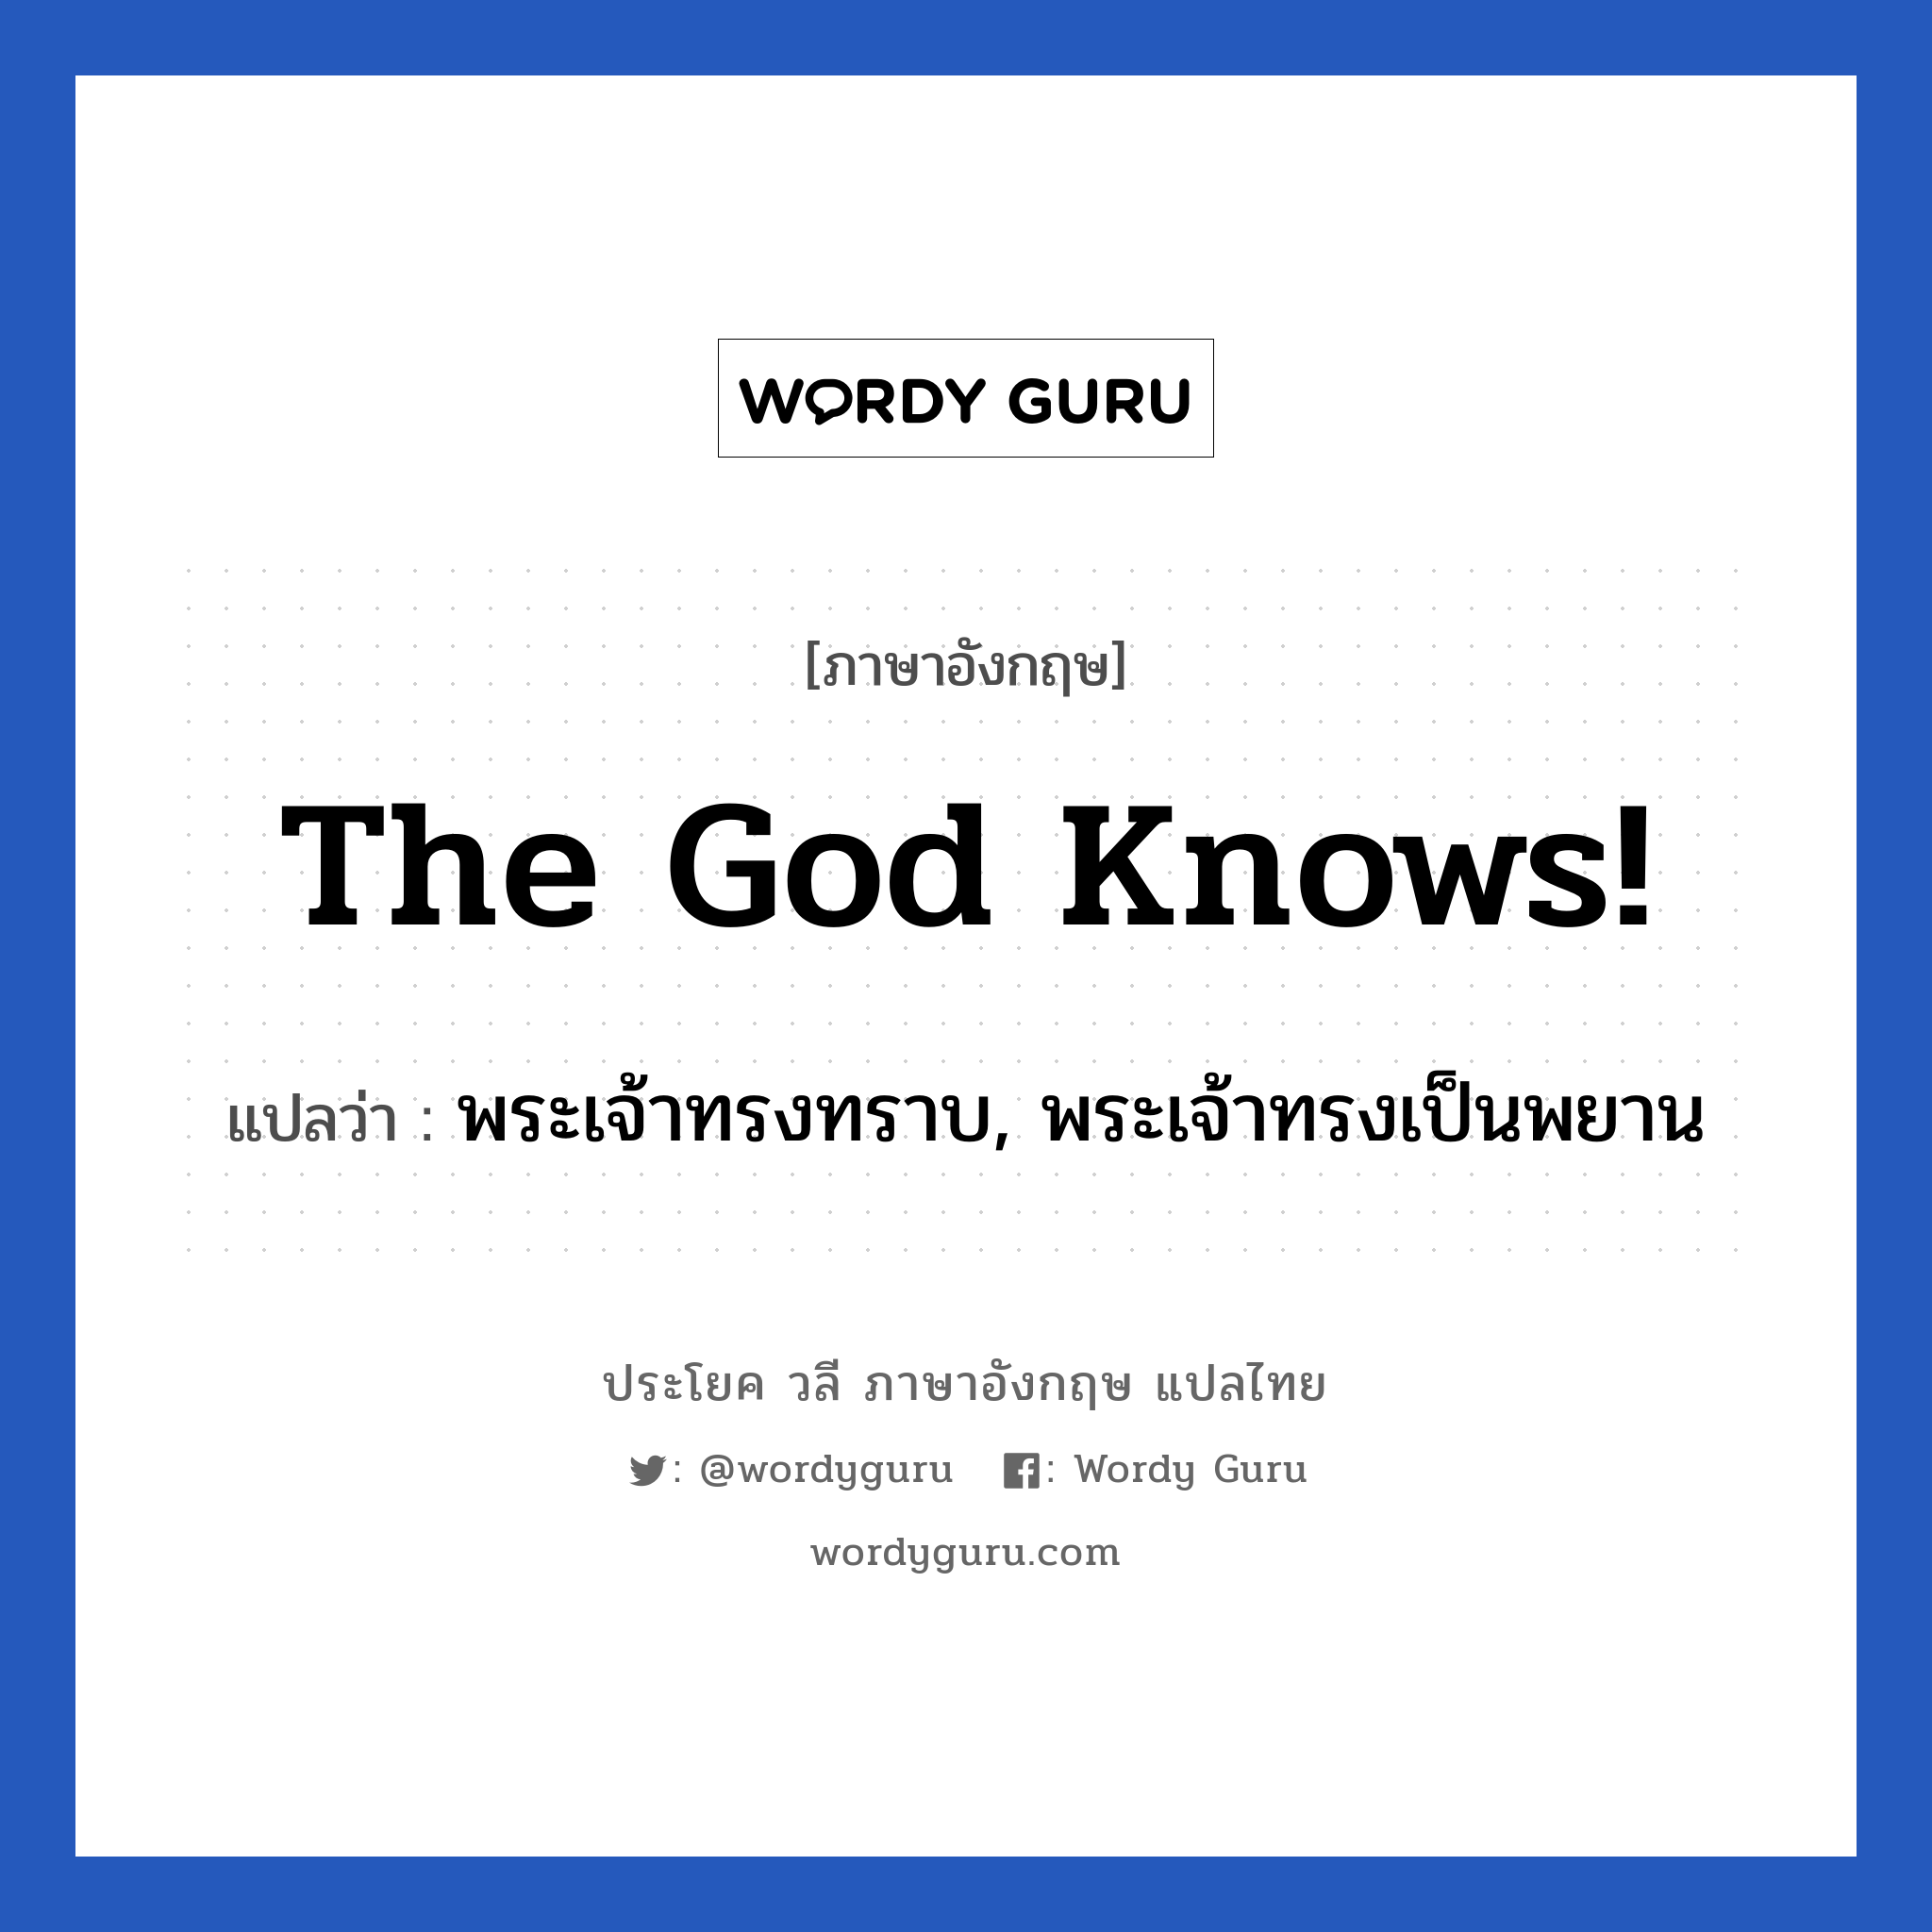 พระเจ้าทรงทราบ, พระเจ้าทรงเป็นพยาน ภาษาอังกฤษ?, วลีภาษาอังกฤษ พระเจ้าทรงทราบ, พระเจ้าทรงเป็นพยาน แปลว่า The God knows!